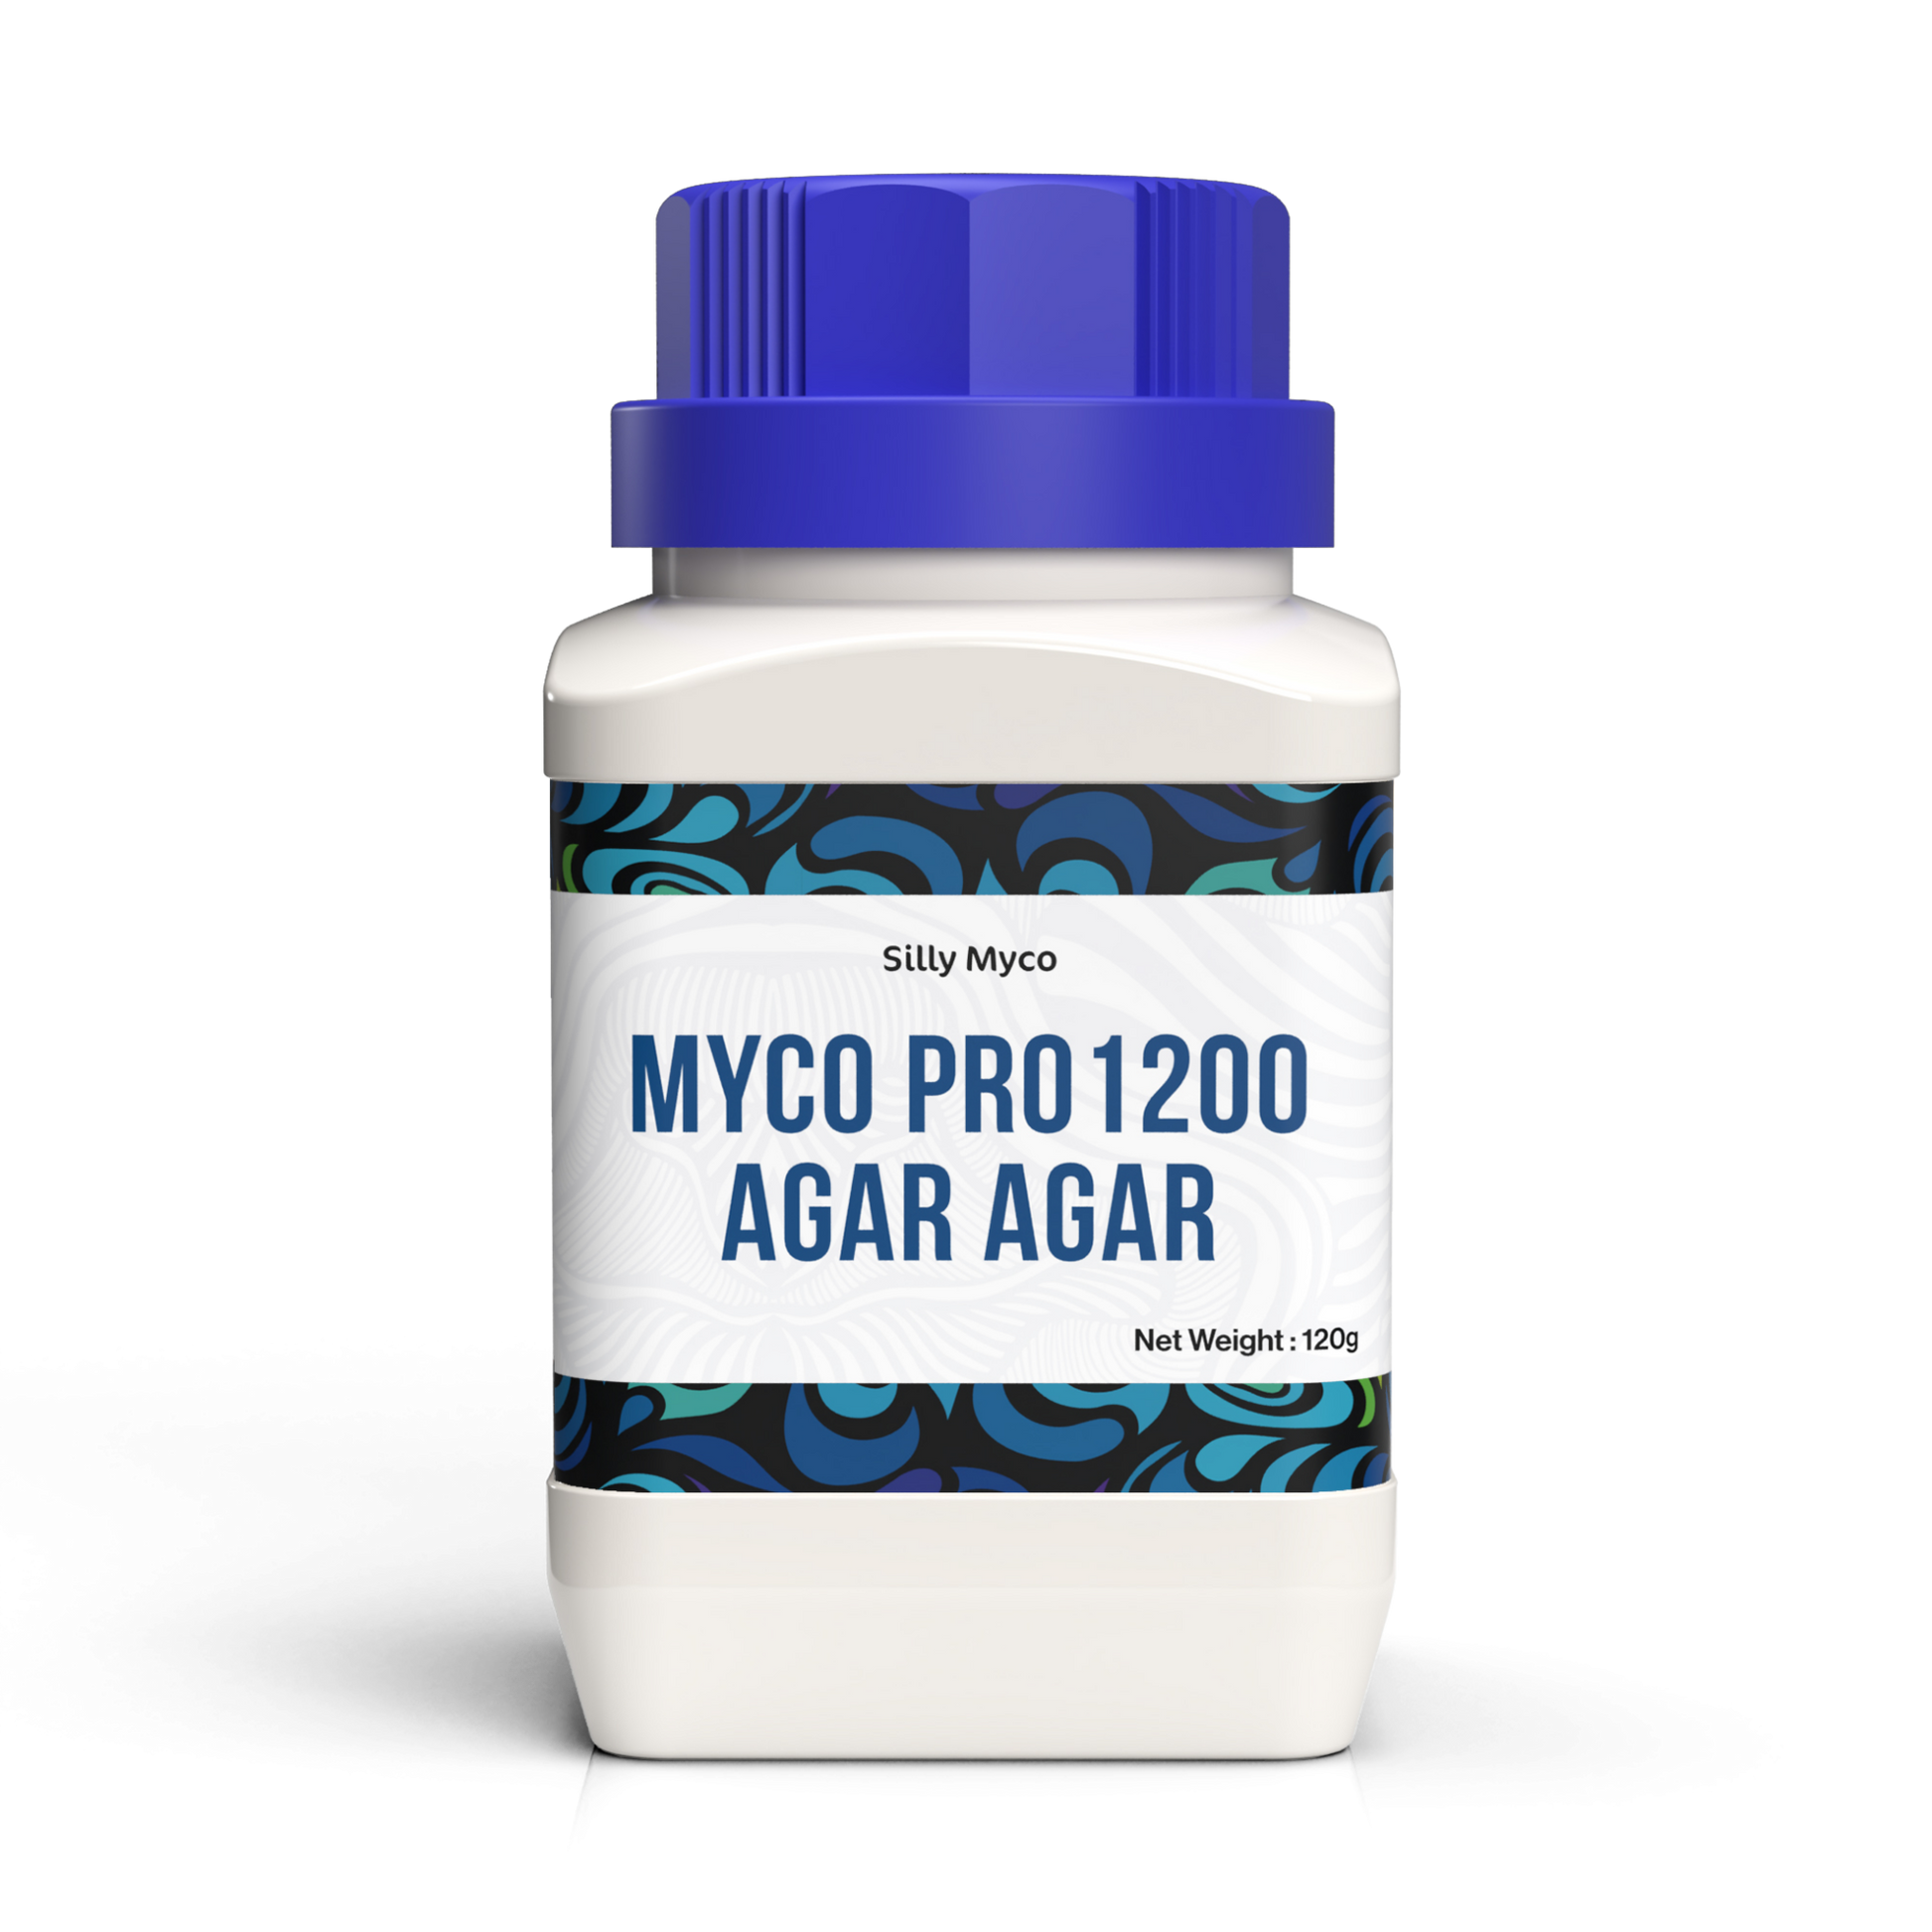 Silly Myco Myco Pro 1200 Agar Agar